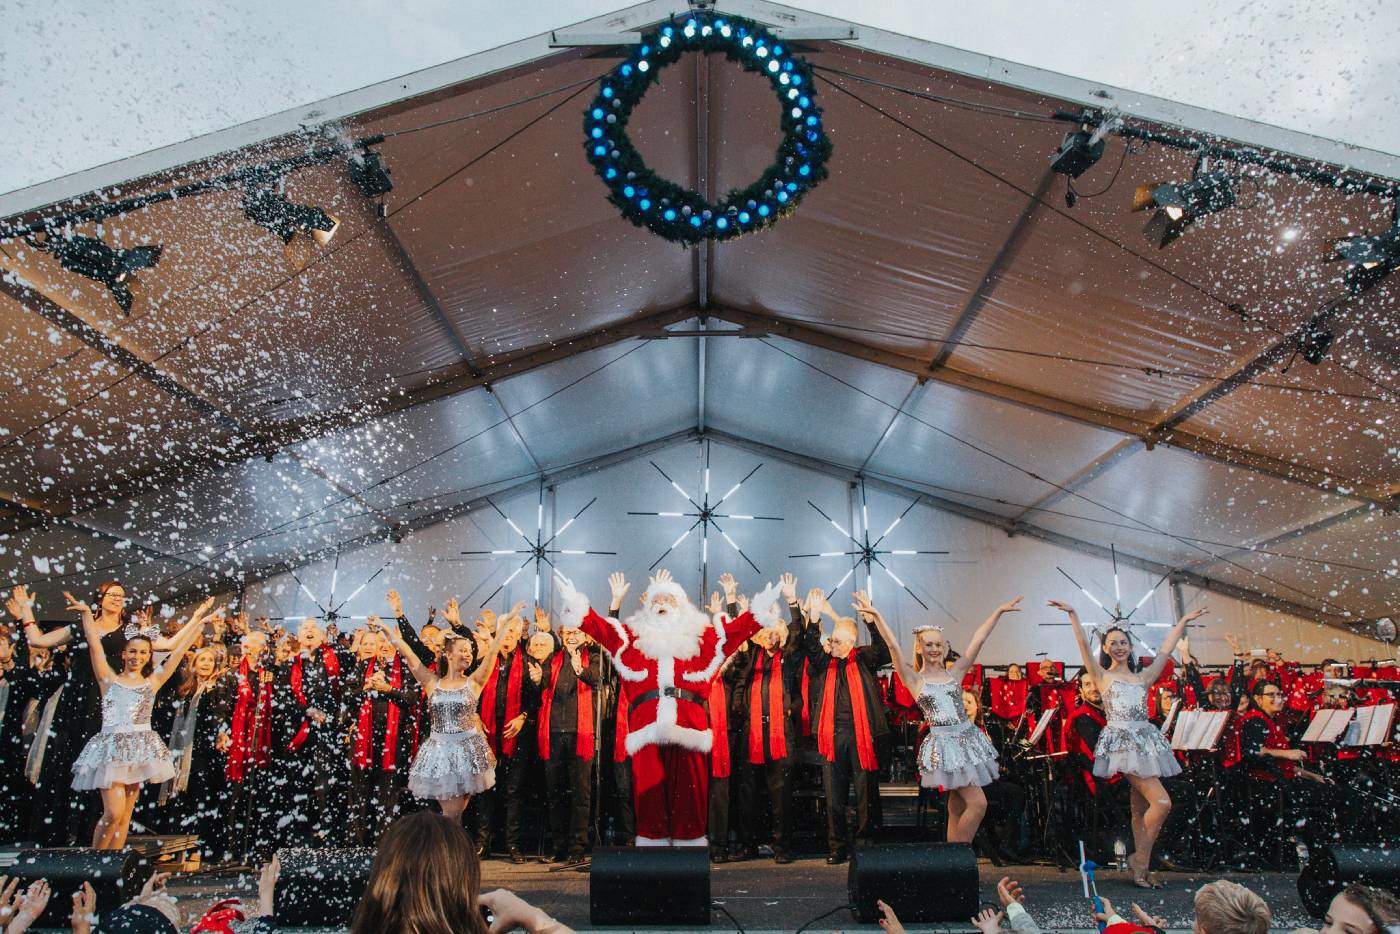 Carols image of Santa and choir standing on stage singing carols